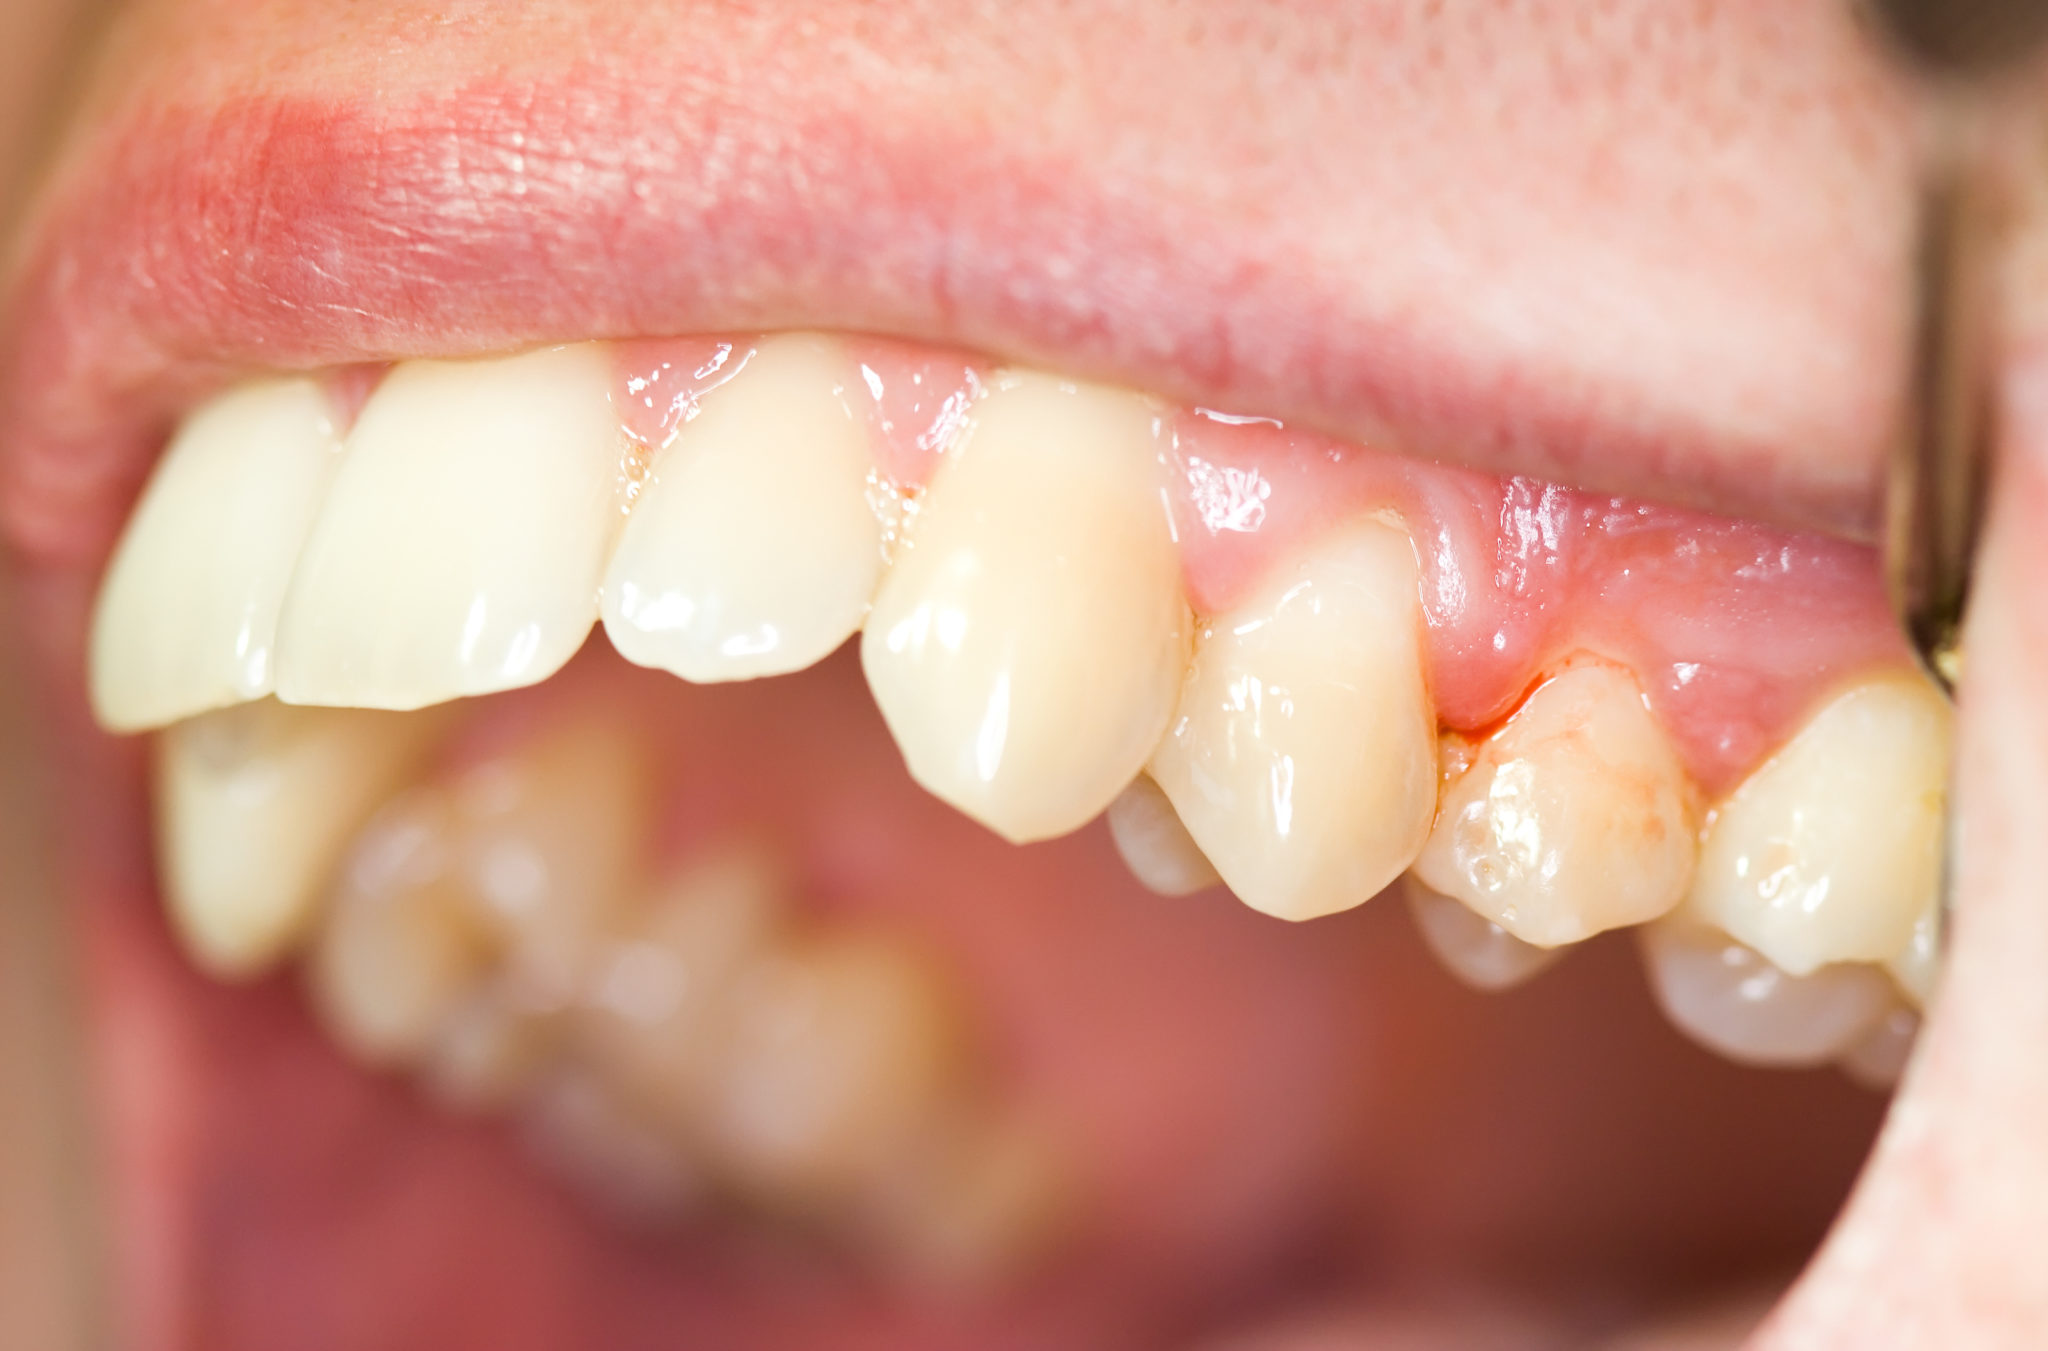 gums bleeding after dentist visit